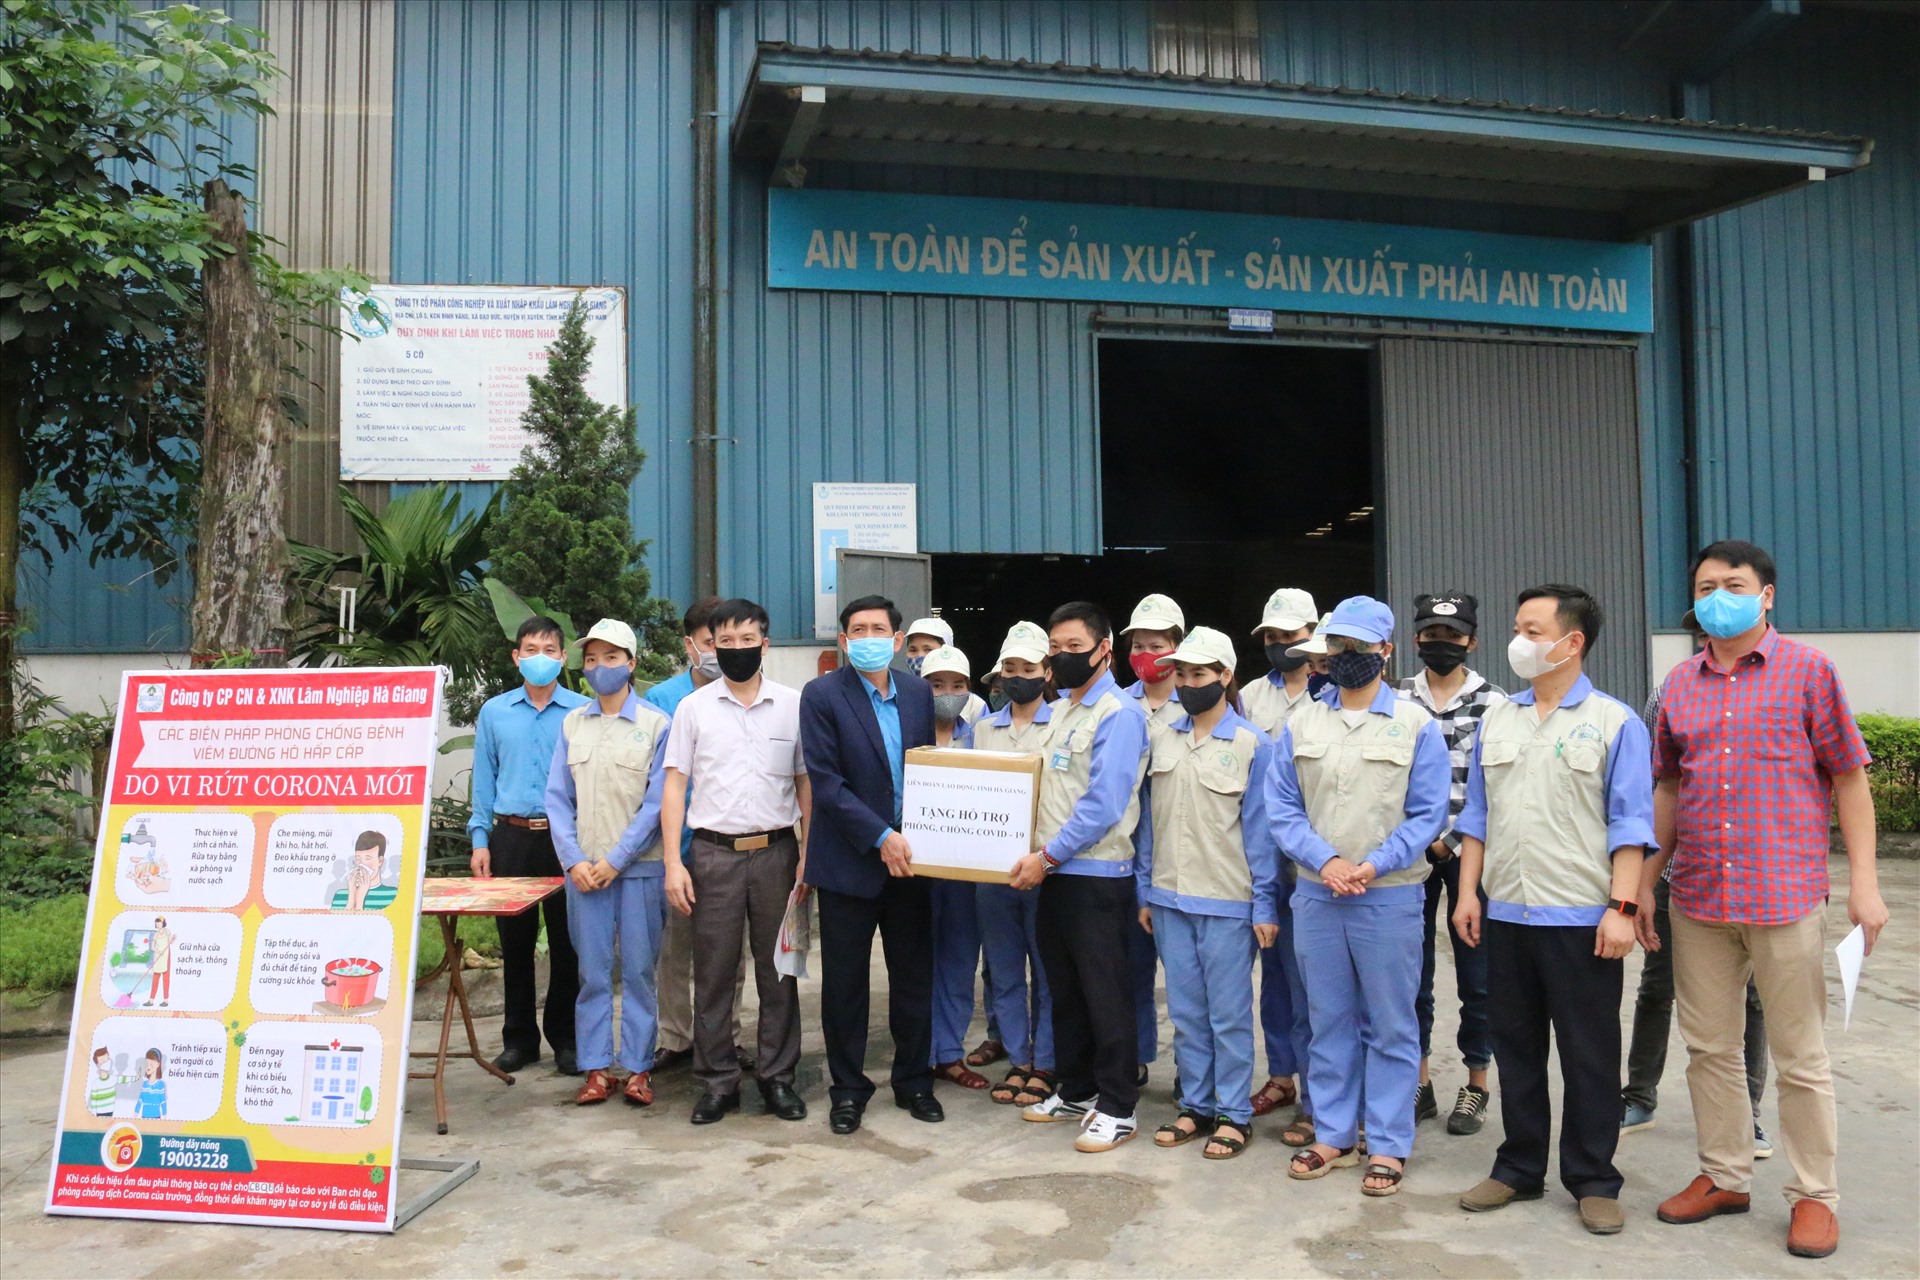 Đồng chí Nguyễn Văn Chung - Tỉnh ủy viên, Chủ tịch Liên đoàn Lao động tỉnh Hà Giang trao hỗ trợ để phòng chống COVID-19 tới công nhân lao động.